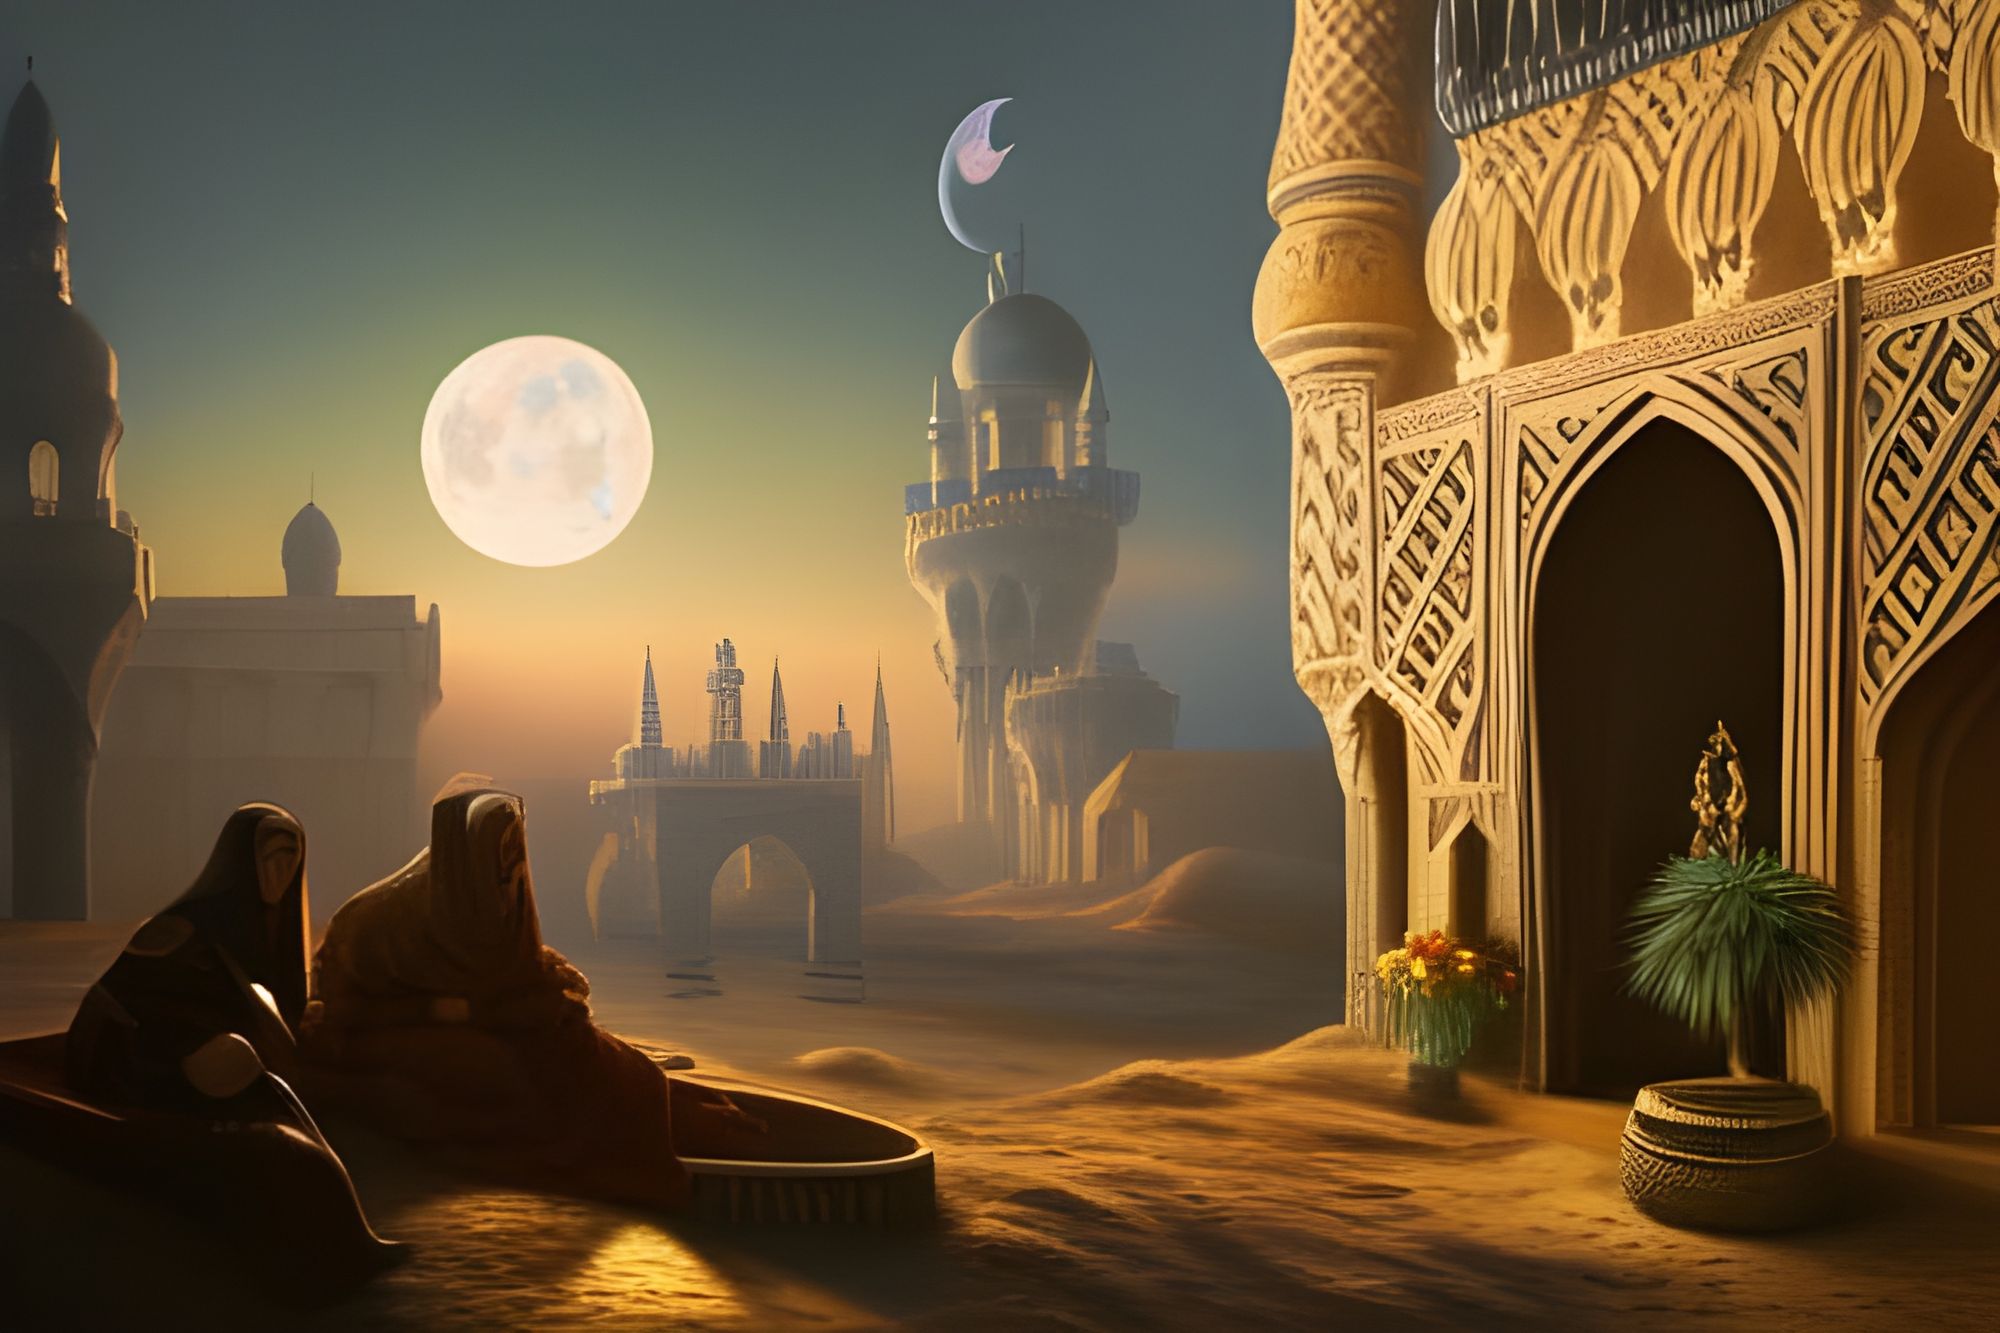 Arabian Nights Marrakesh Wallpaper - Etsy